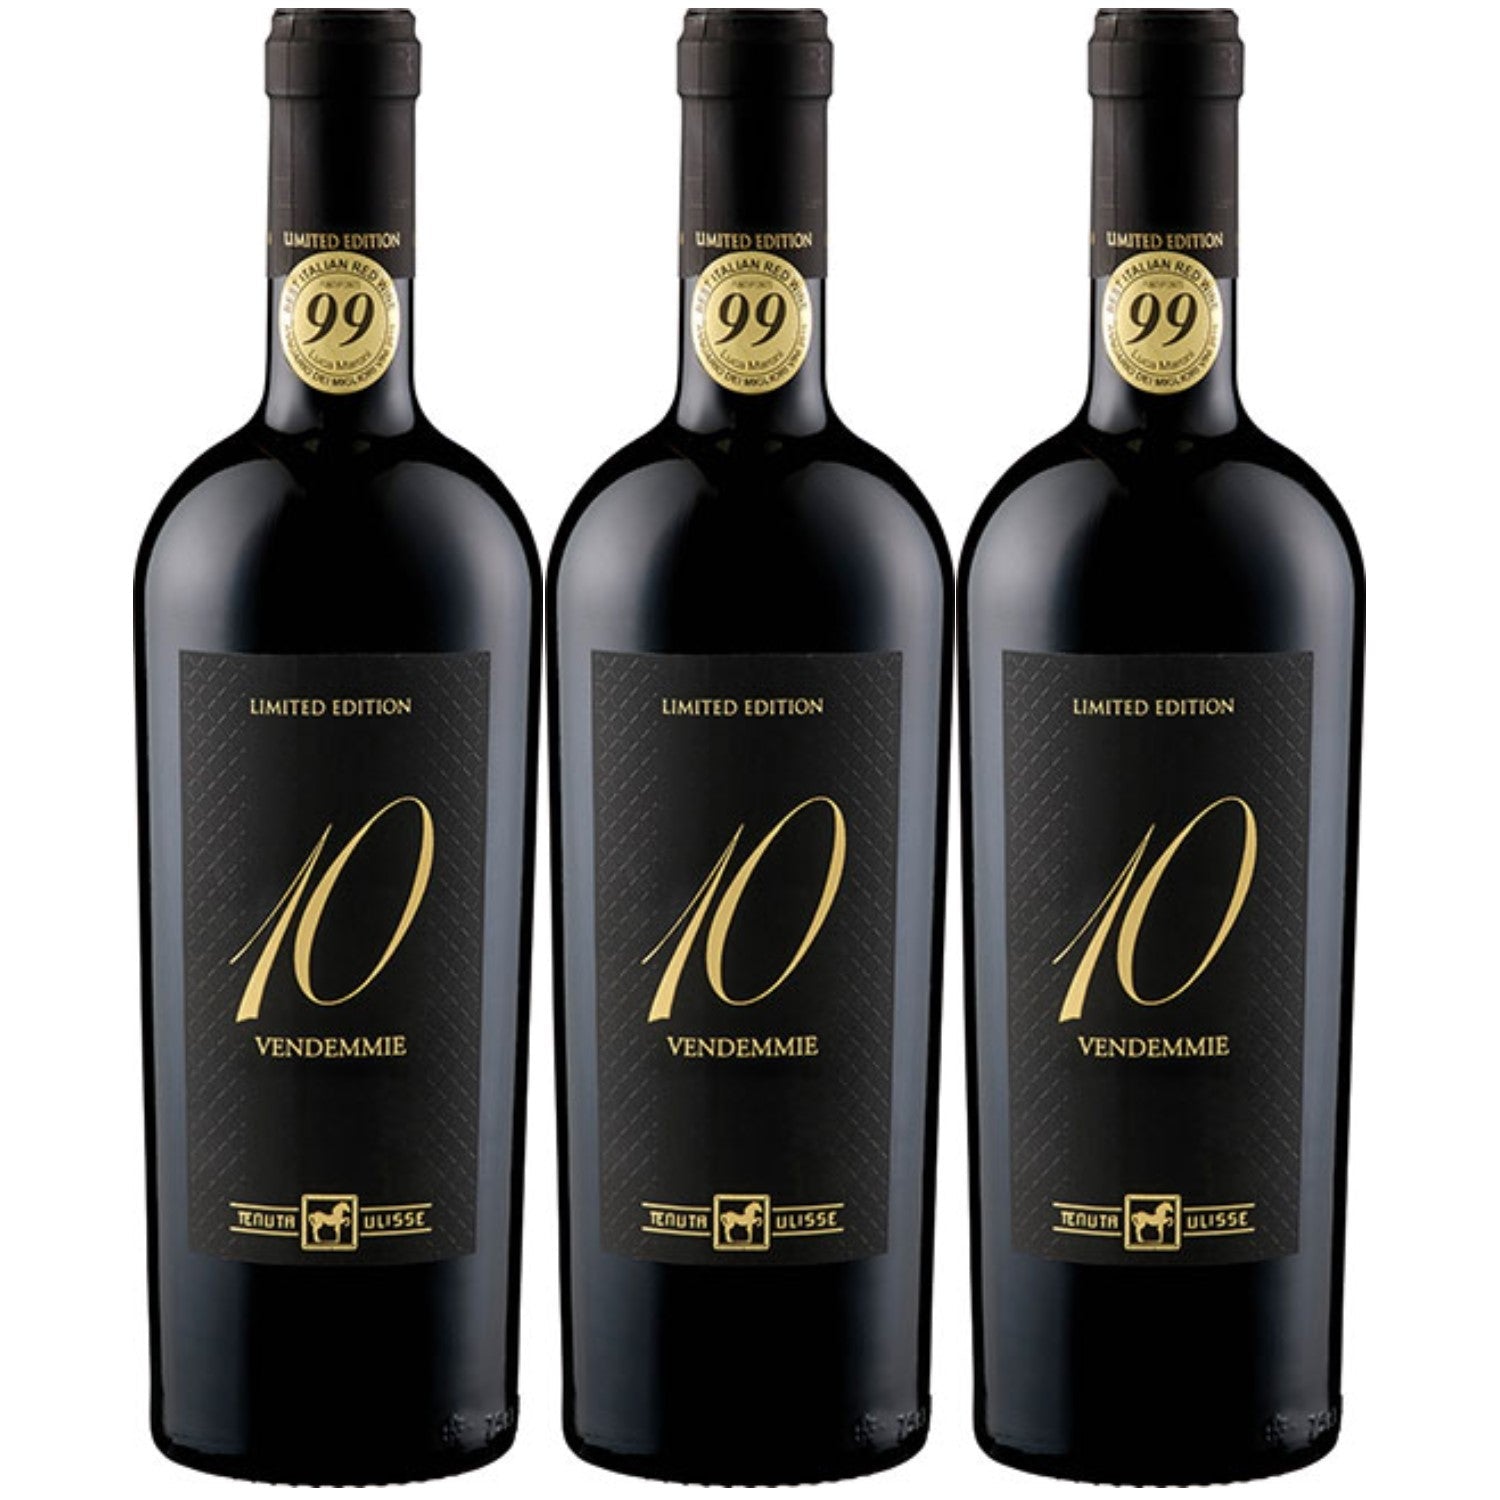 Tenuta Ulisse DIECI VENDEMMIE NV Montepulciano d'Abruzzo Rotwein Wein Halbtrocken Italien (3 x 0.75l) - Versanel -